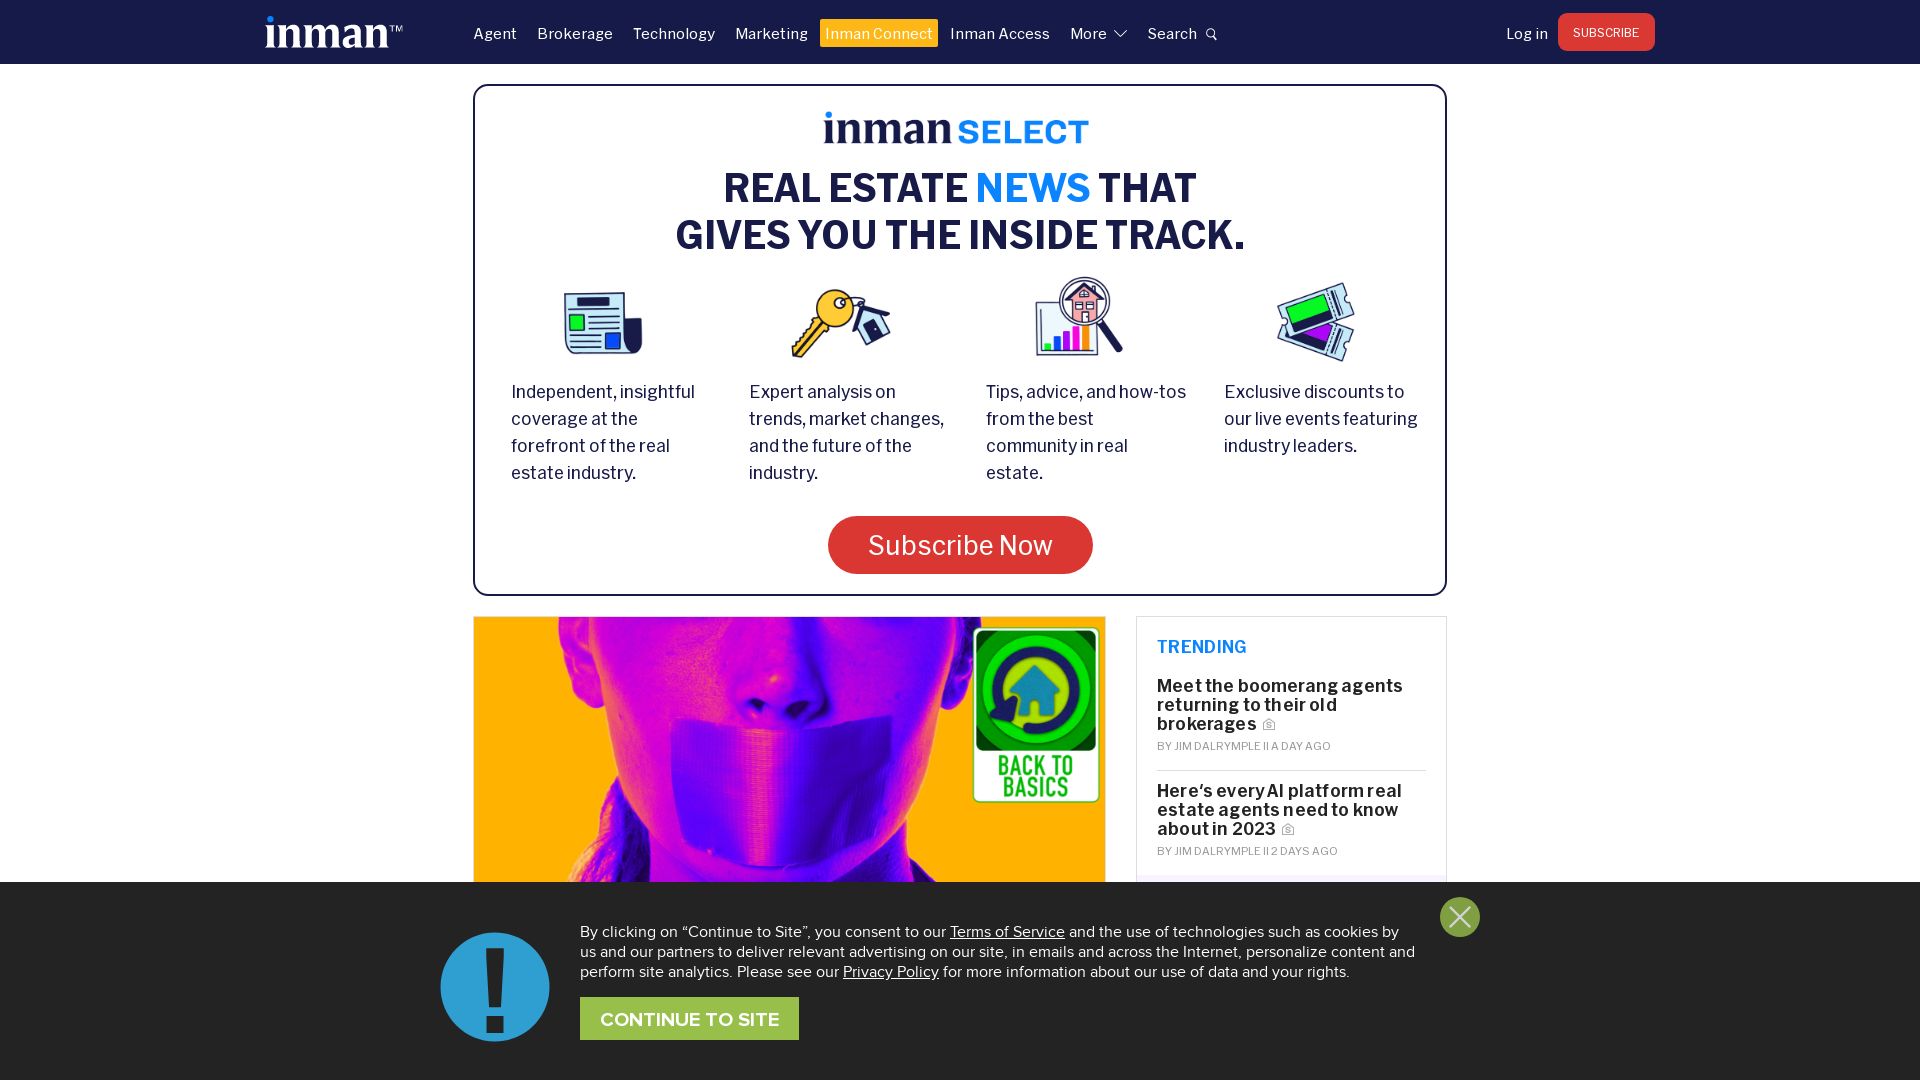 État du site web inman.com est   EN LIGNE